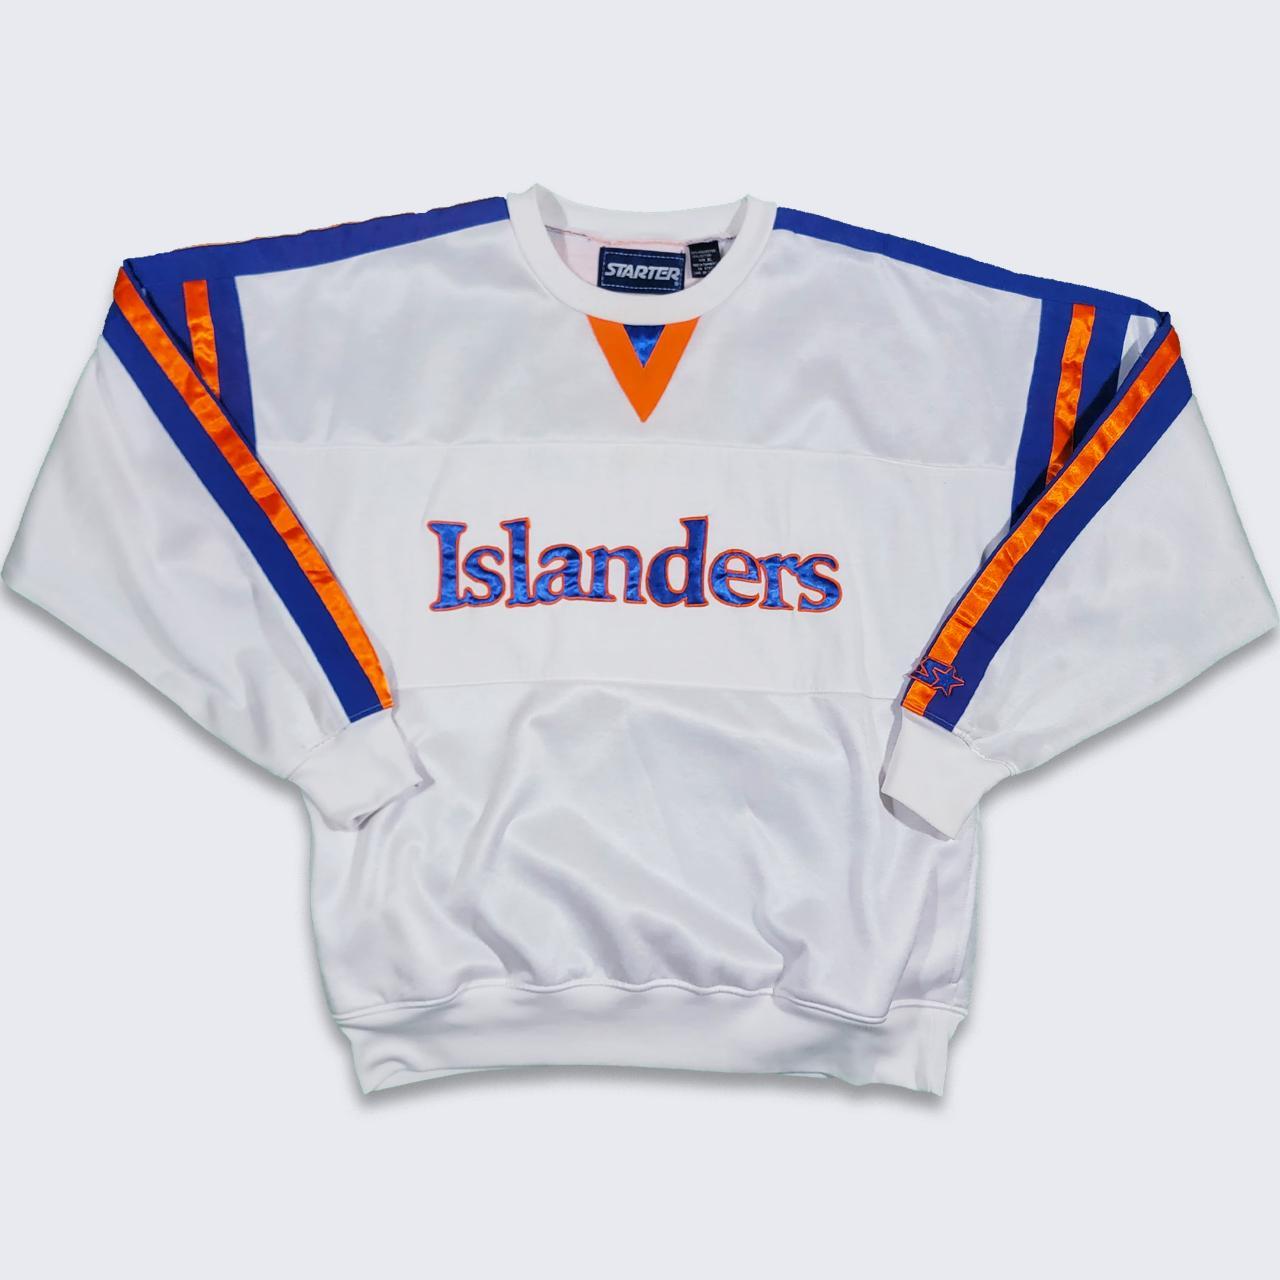 Vintage New York Islanders sweatshirt made in the